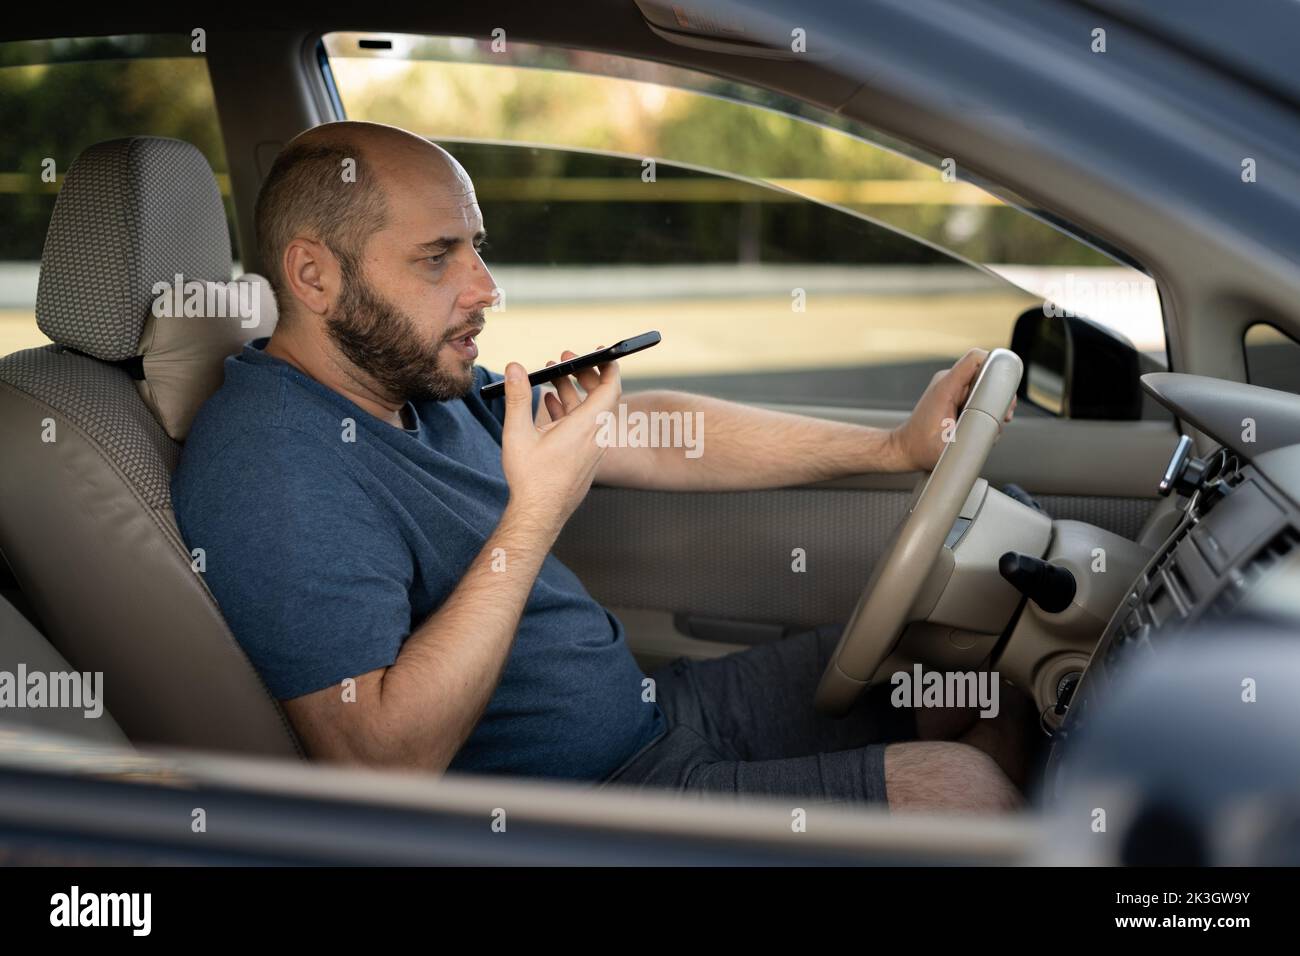 homme conduisant sa nouvelle voiture enregistrant le message vocal sur smartphone, conducteur utilisant l'enregistreur de commande vocale sur le téléphone Banque D'Images